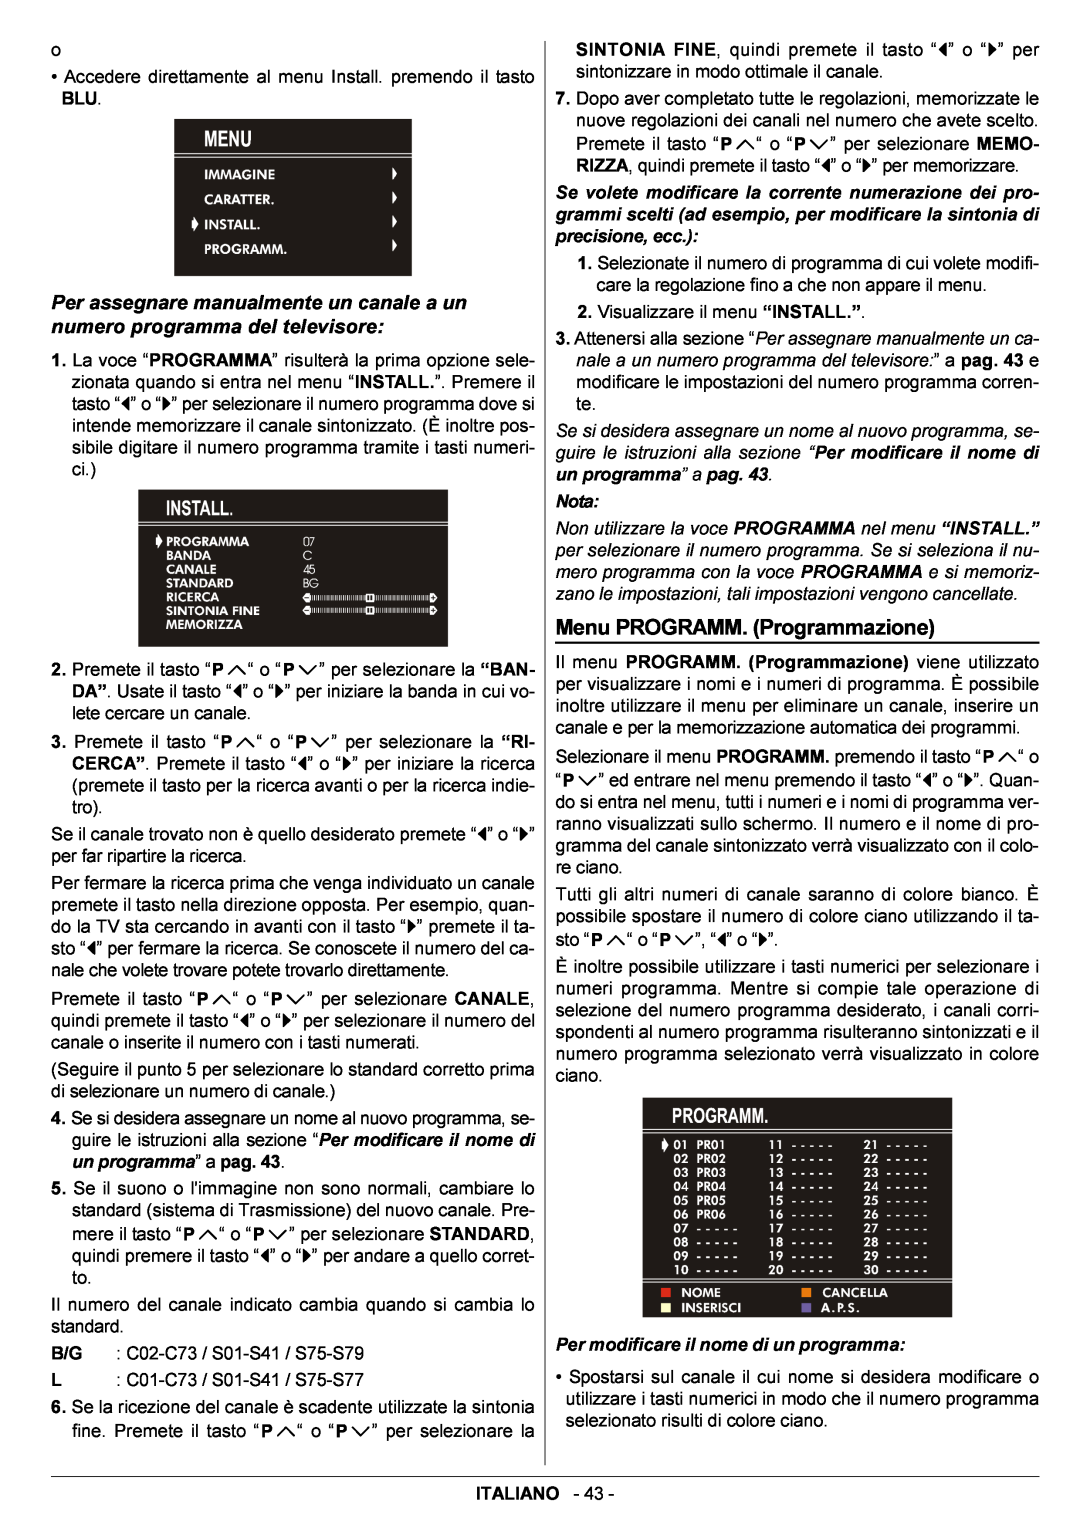 JVC AV14BJ8EPS manual Menu PROGRAMM. Programmazione, Nota, Per modificare il nome di un programma 